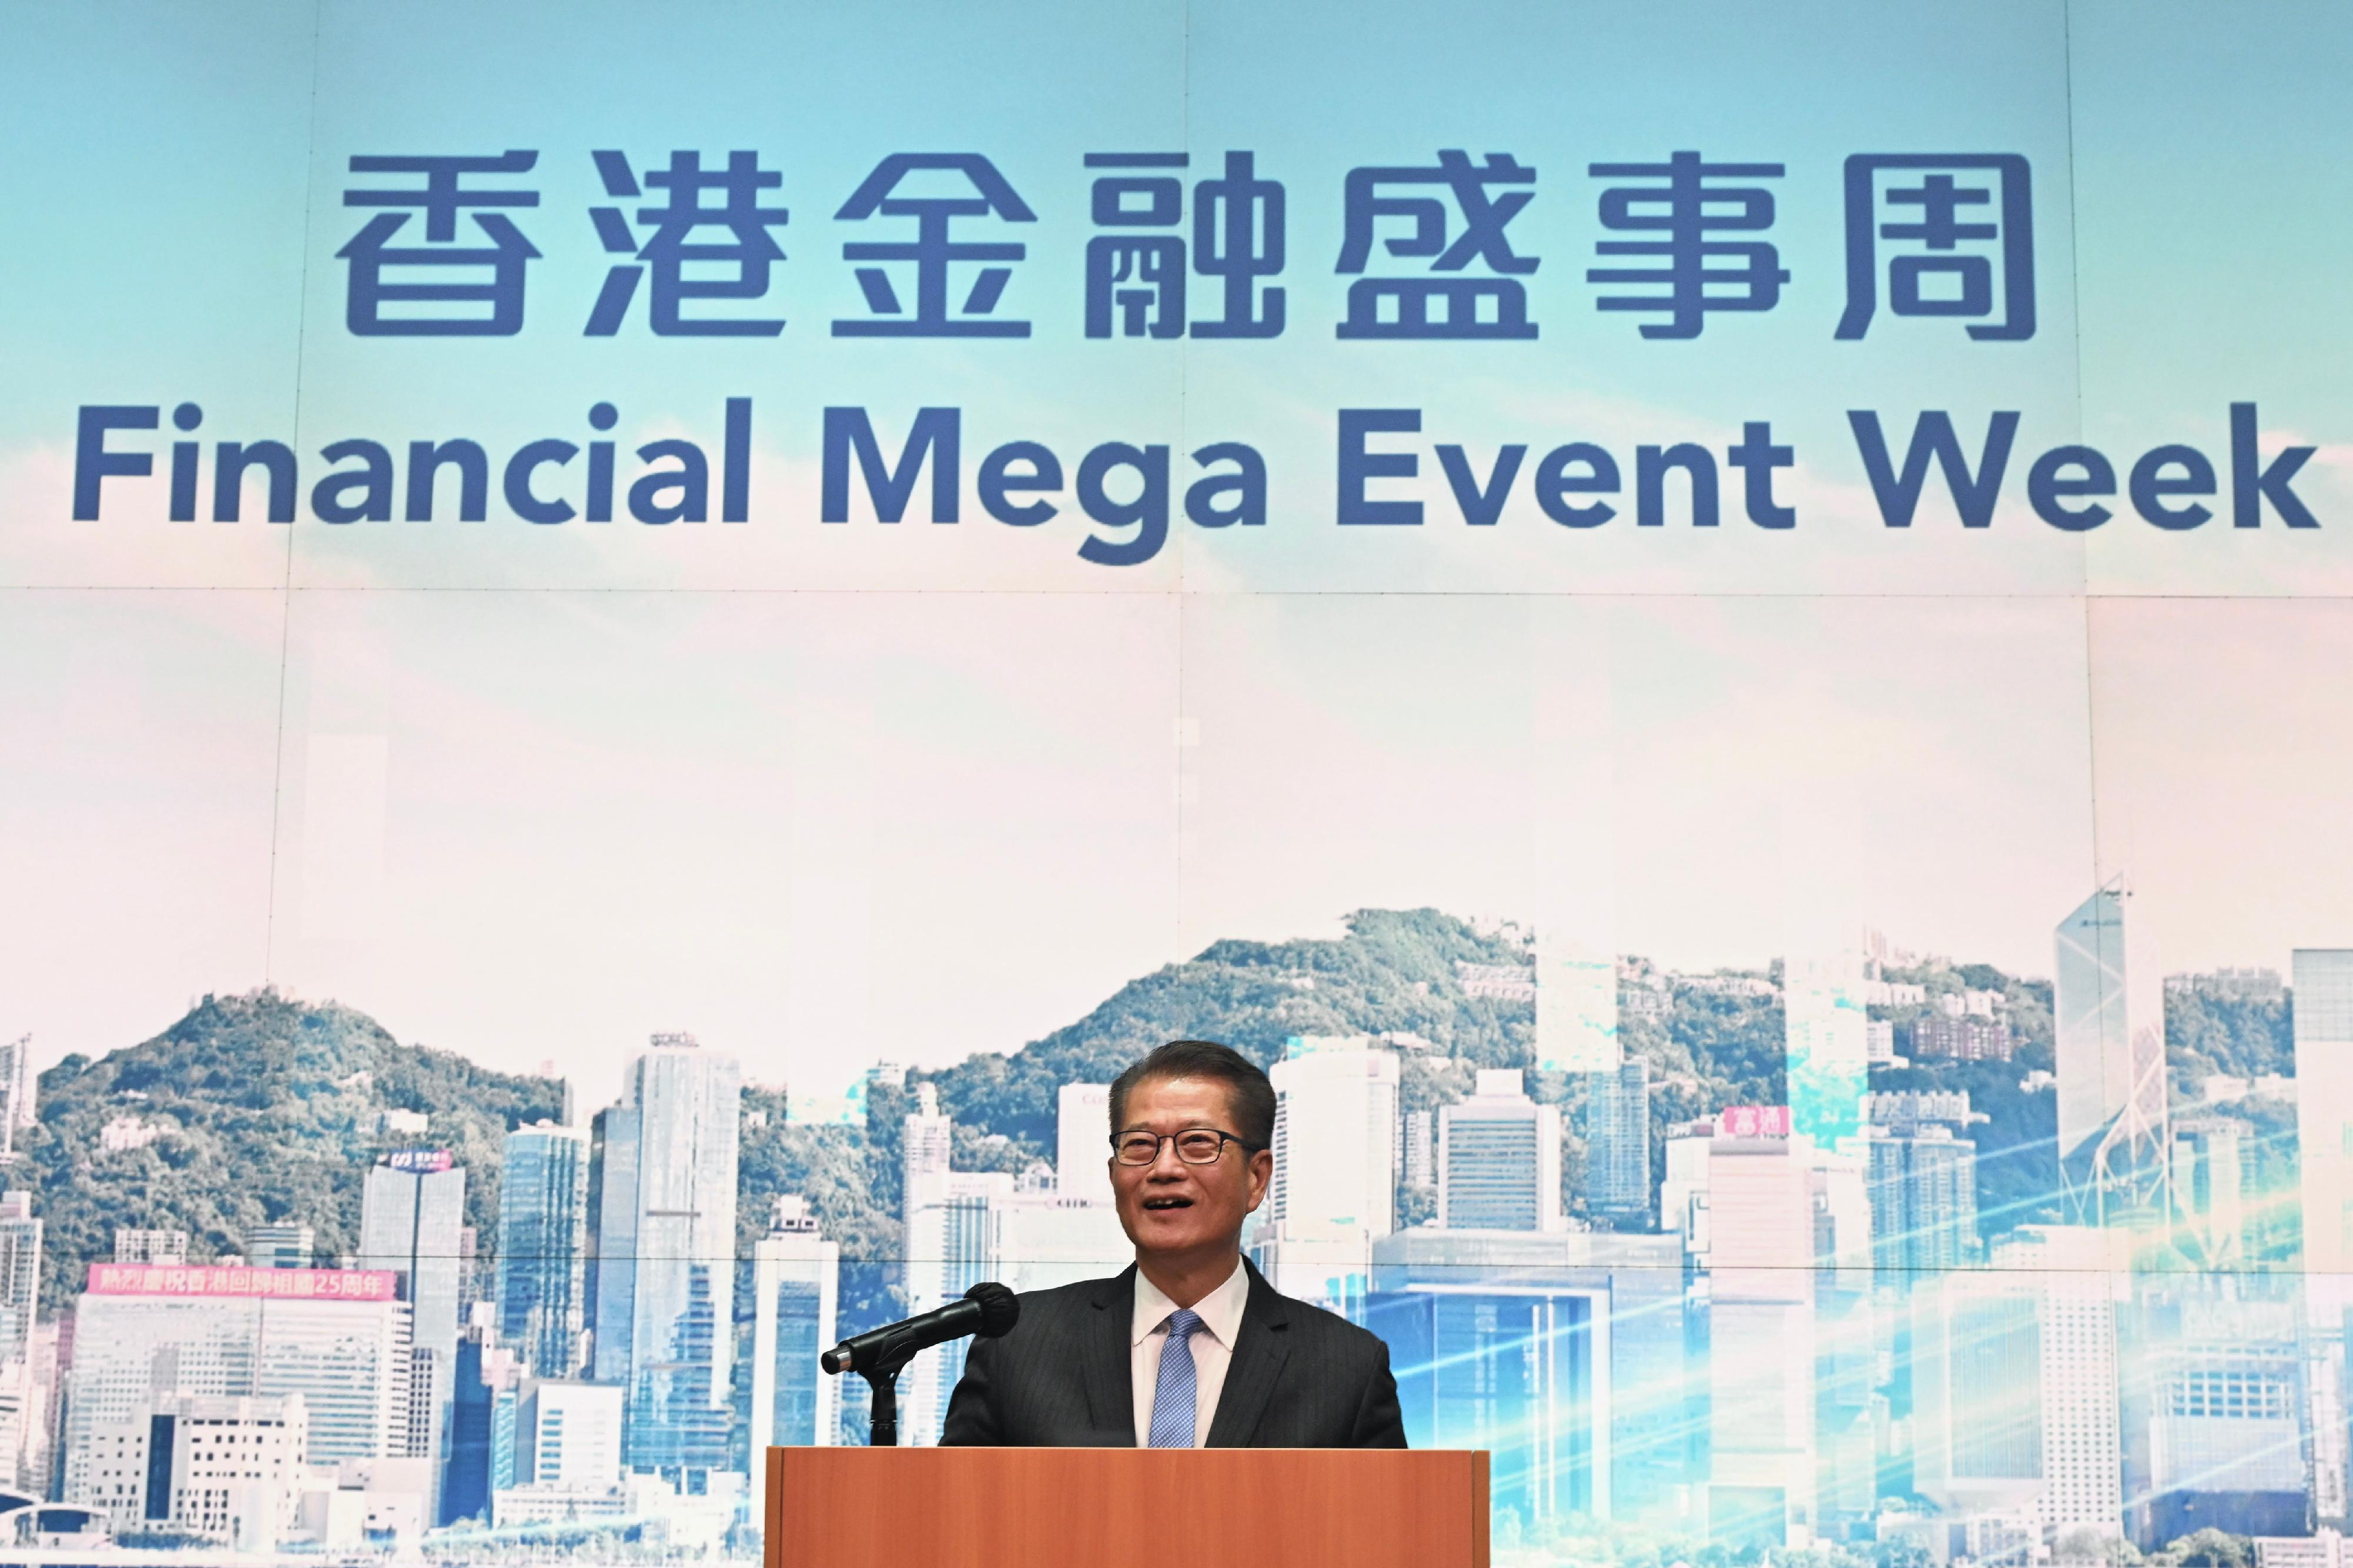 財政司司長陳茂波今日（三月七日）在金融盛事周啓動儀式致辭。